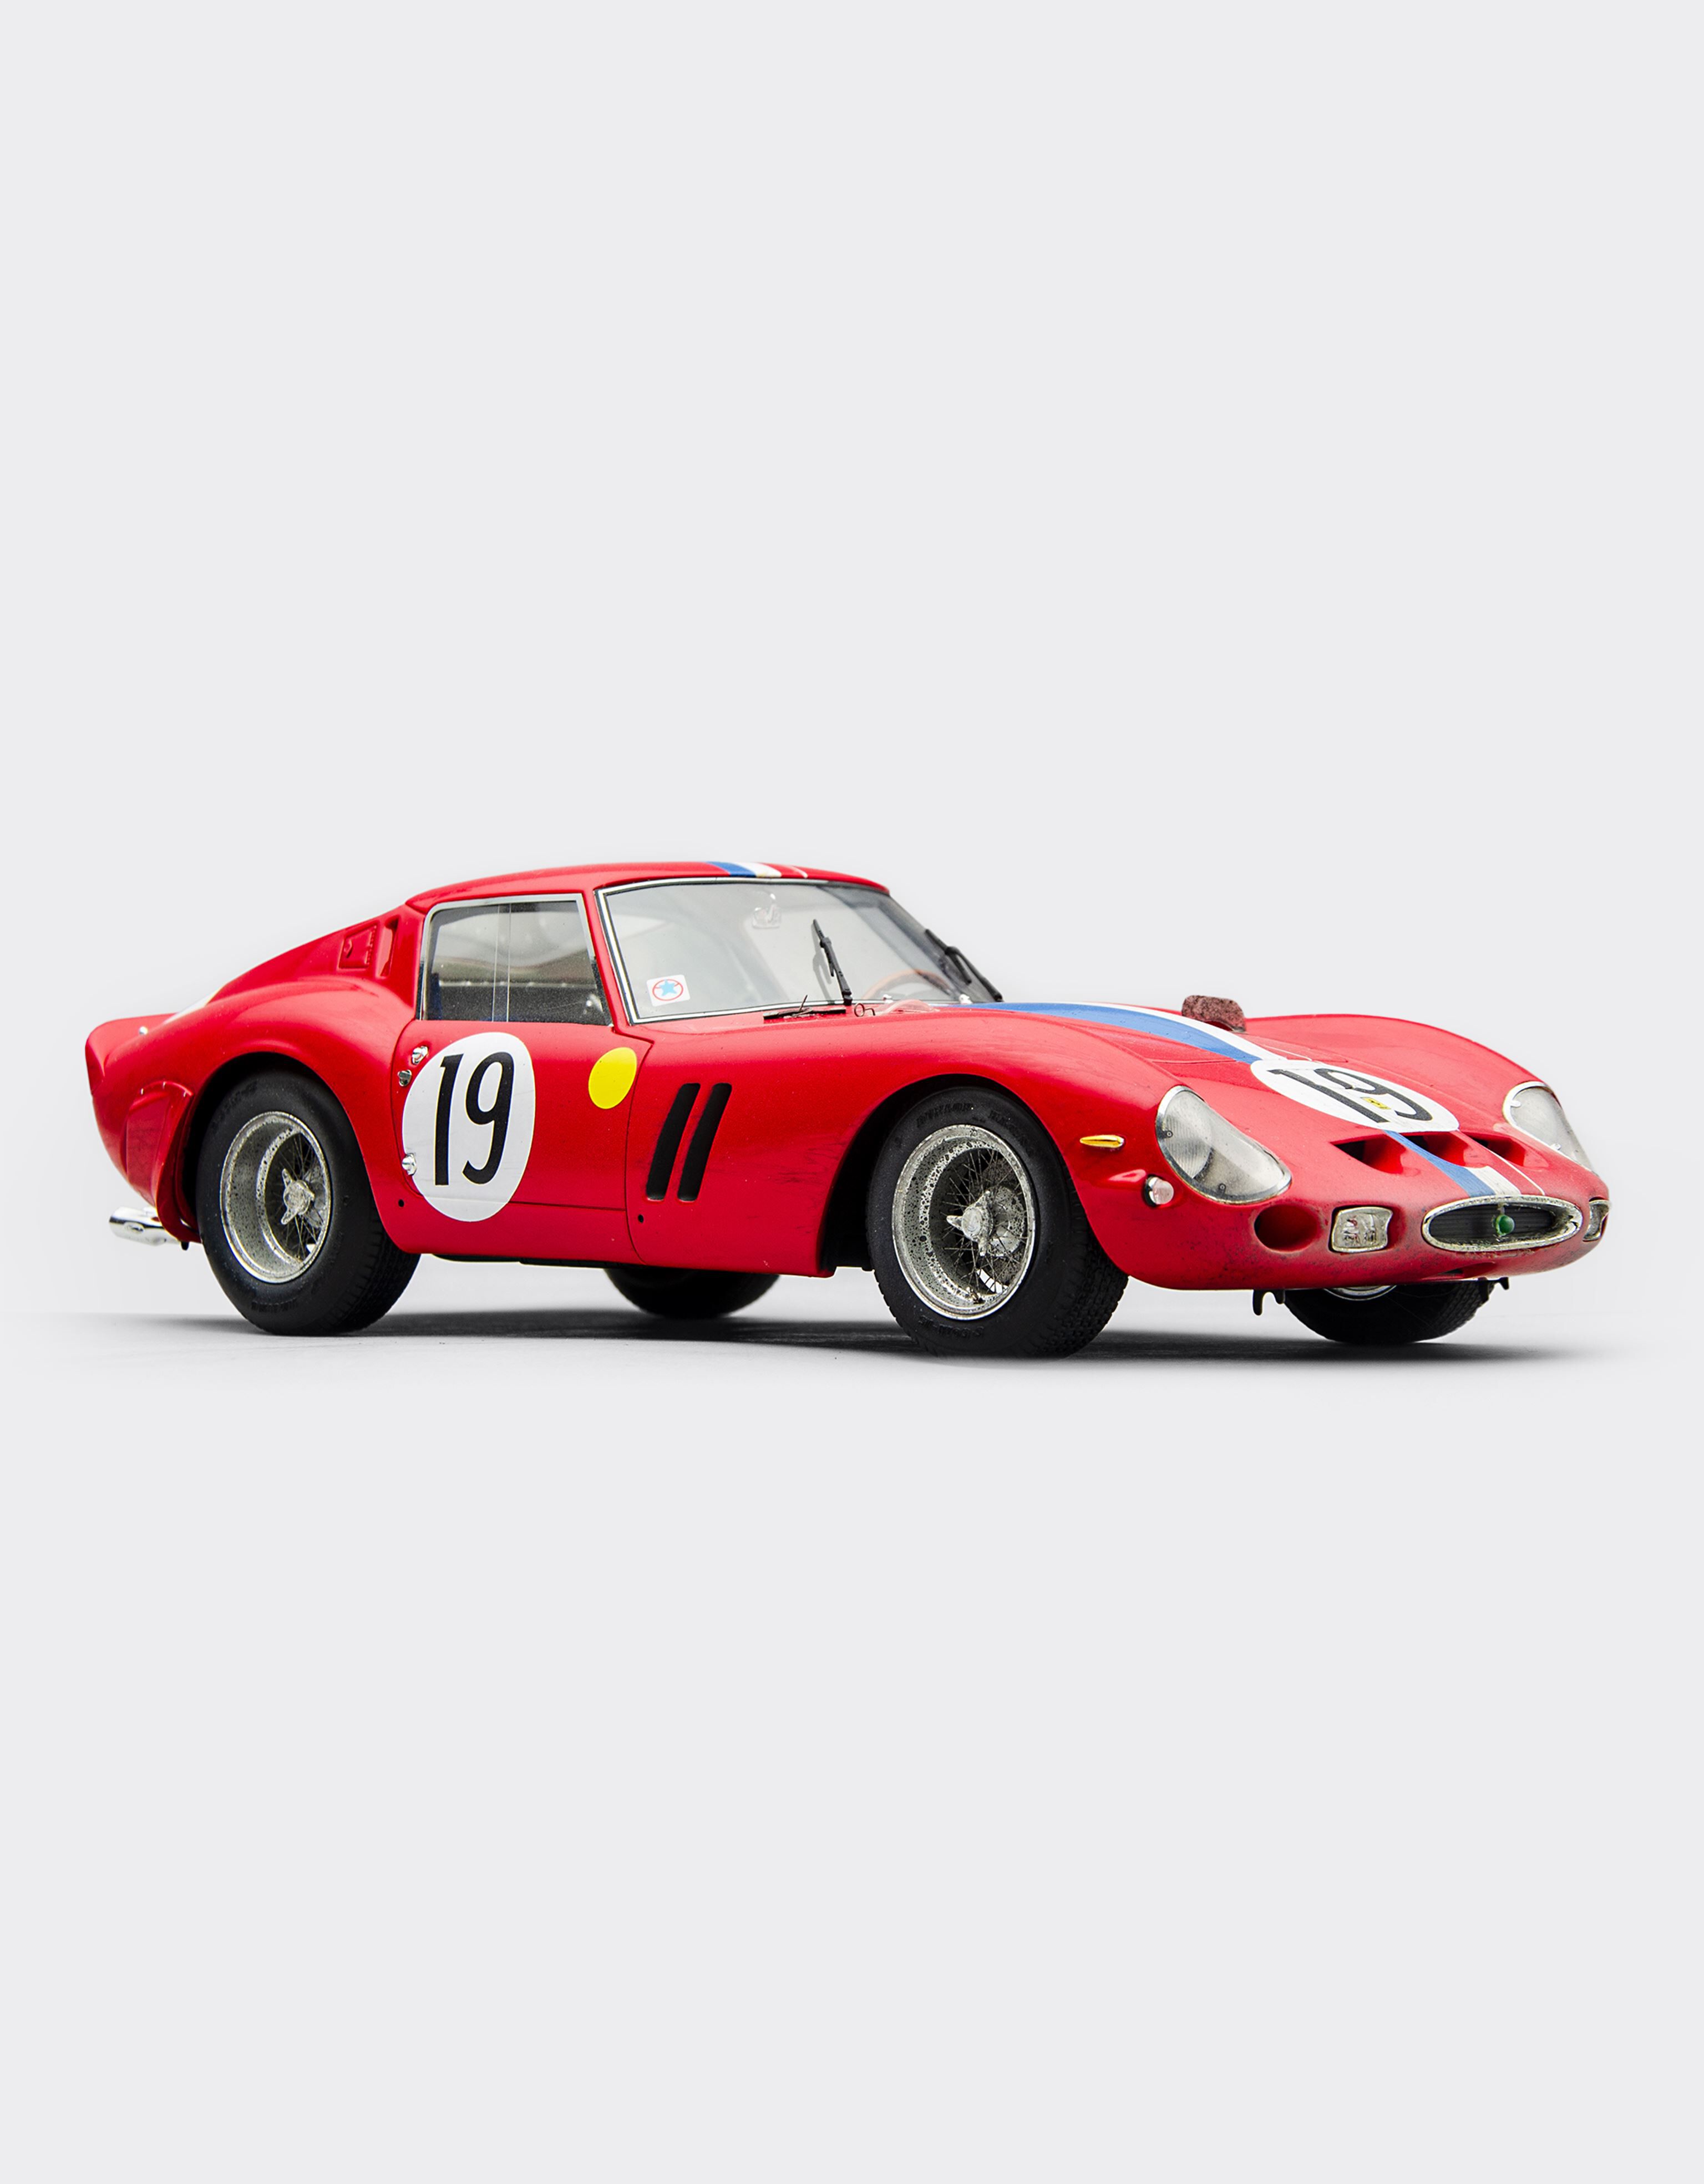 Ferrari Ferrari 250 GTO 1962 “Race weathered” Le Mans in 1:18 scale Rosso Corsa 20168f